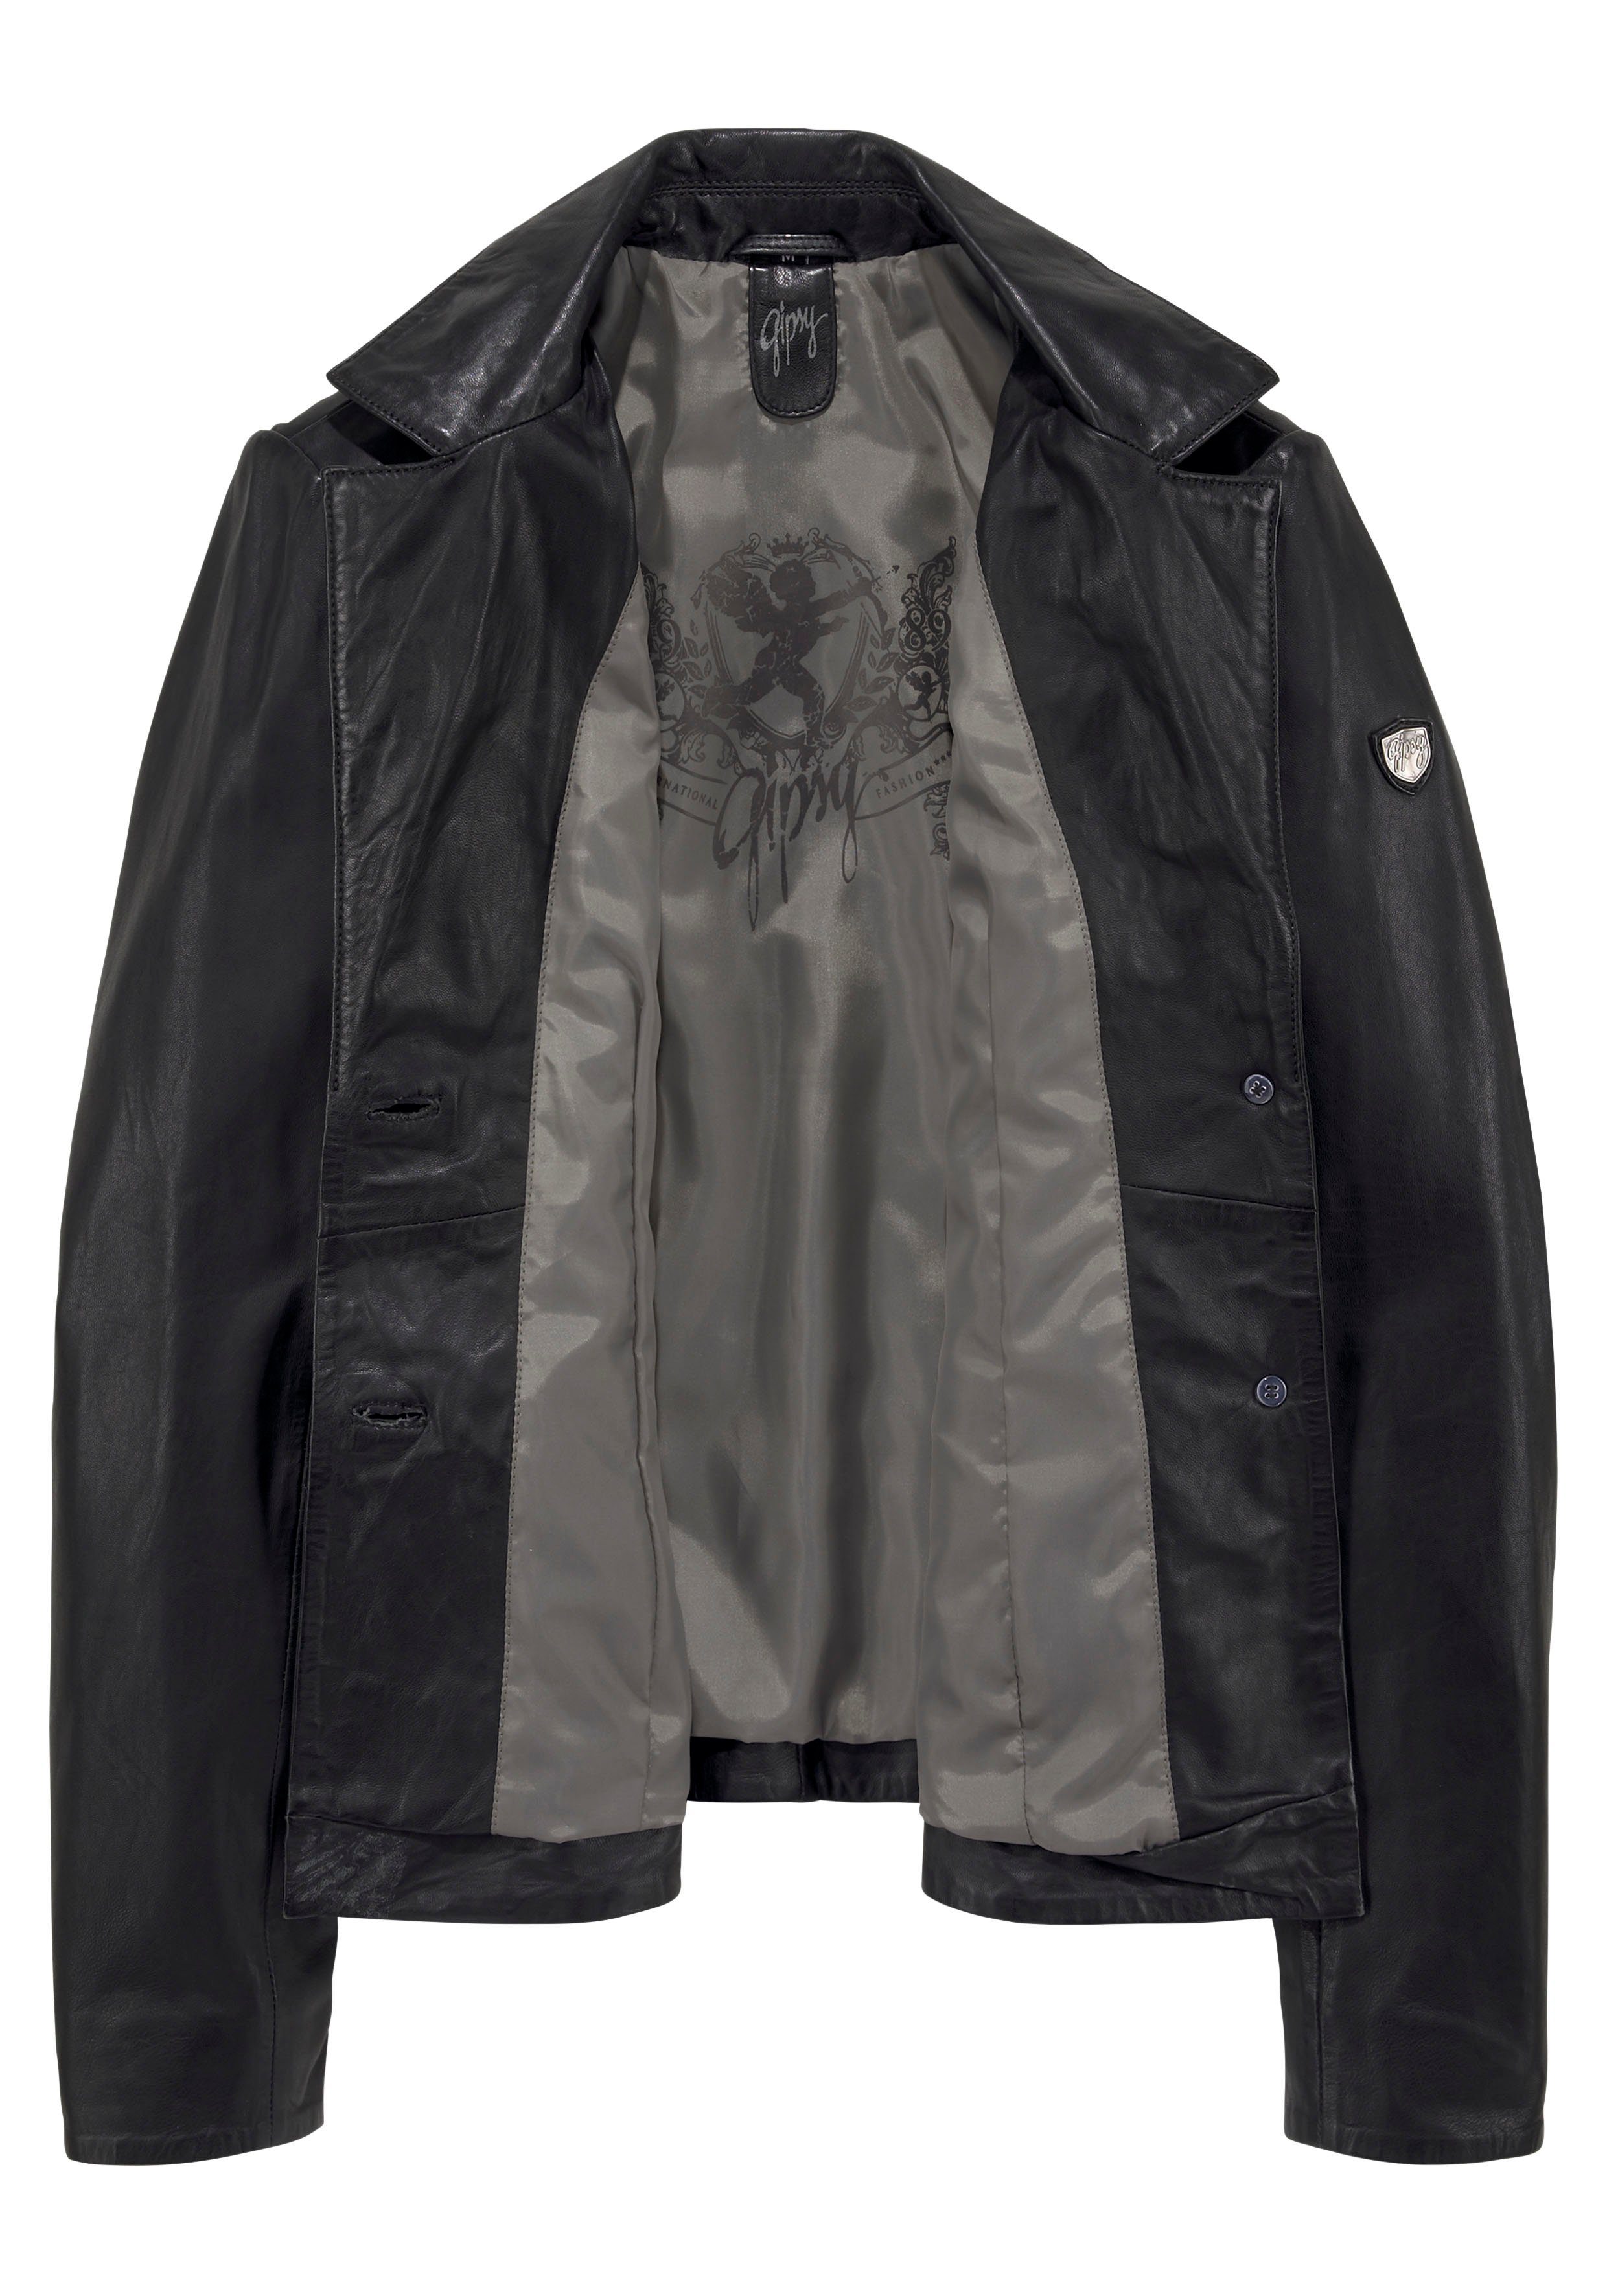 Gipsy modischem Reverskragen mit Lederjacke Mya black Blazer-Stil im